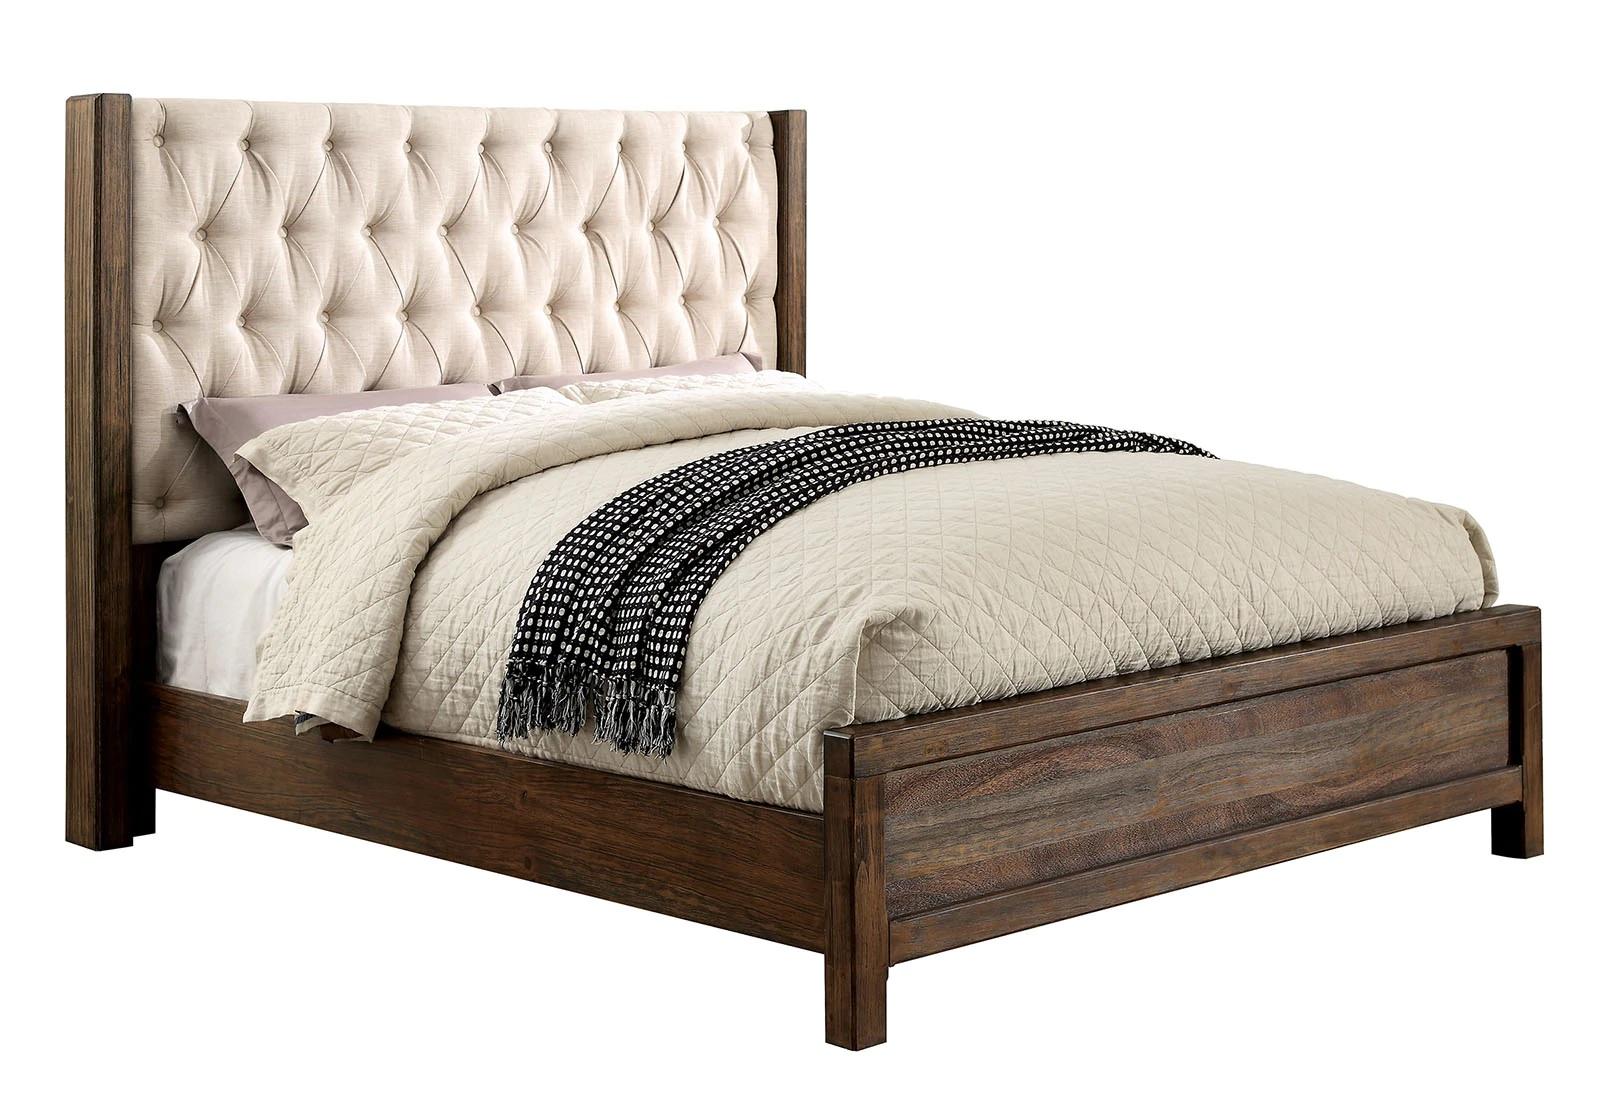 

    
Rustic Natural & Beige Solid Wood Queen Bedroom Set 5pcs Furniture of America CM7577-Q Hutchinson
